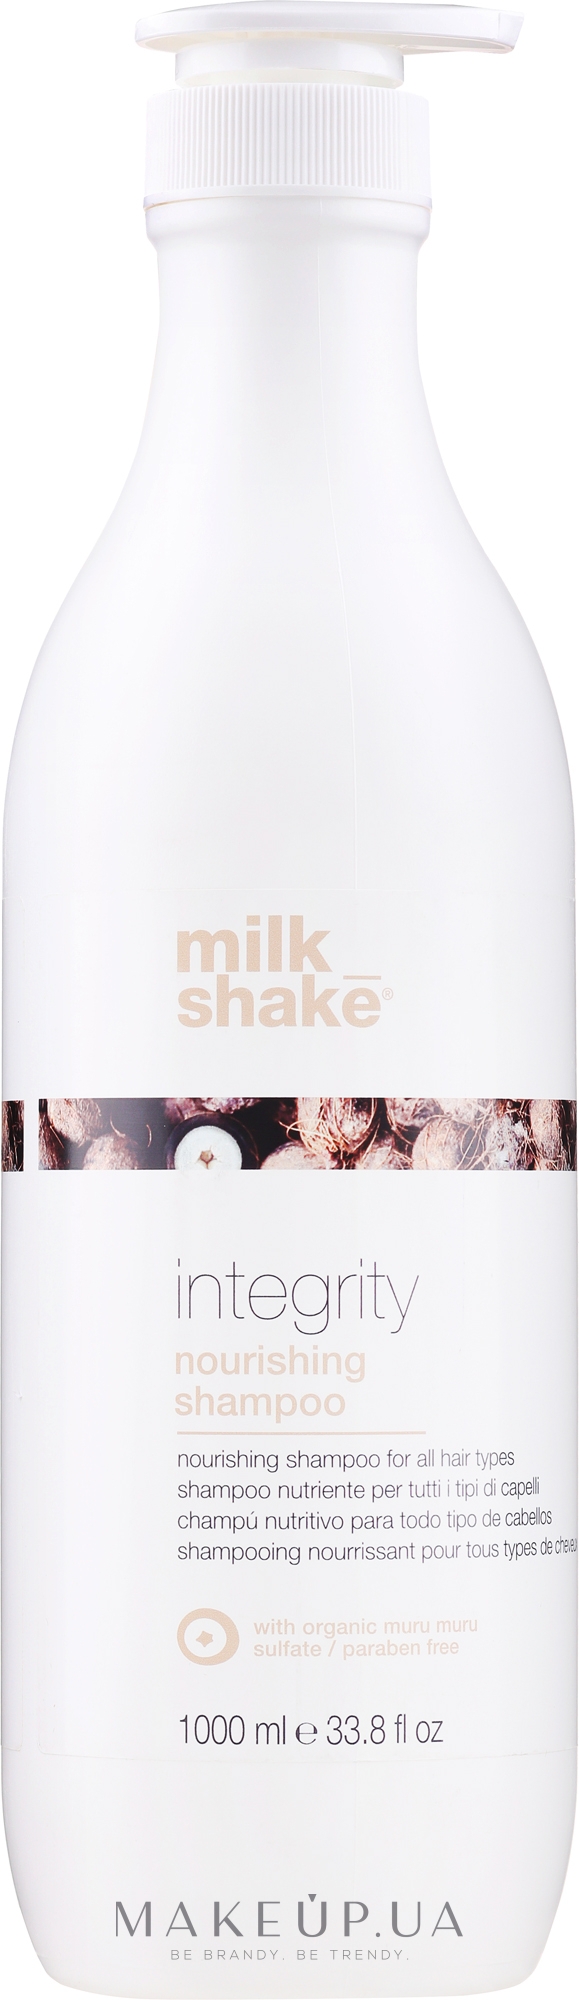 Питательный шампунь для всех типов волос - Milk Shake Integrity Nourishing Shampoo — фото 1000ml